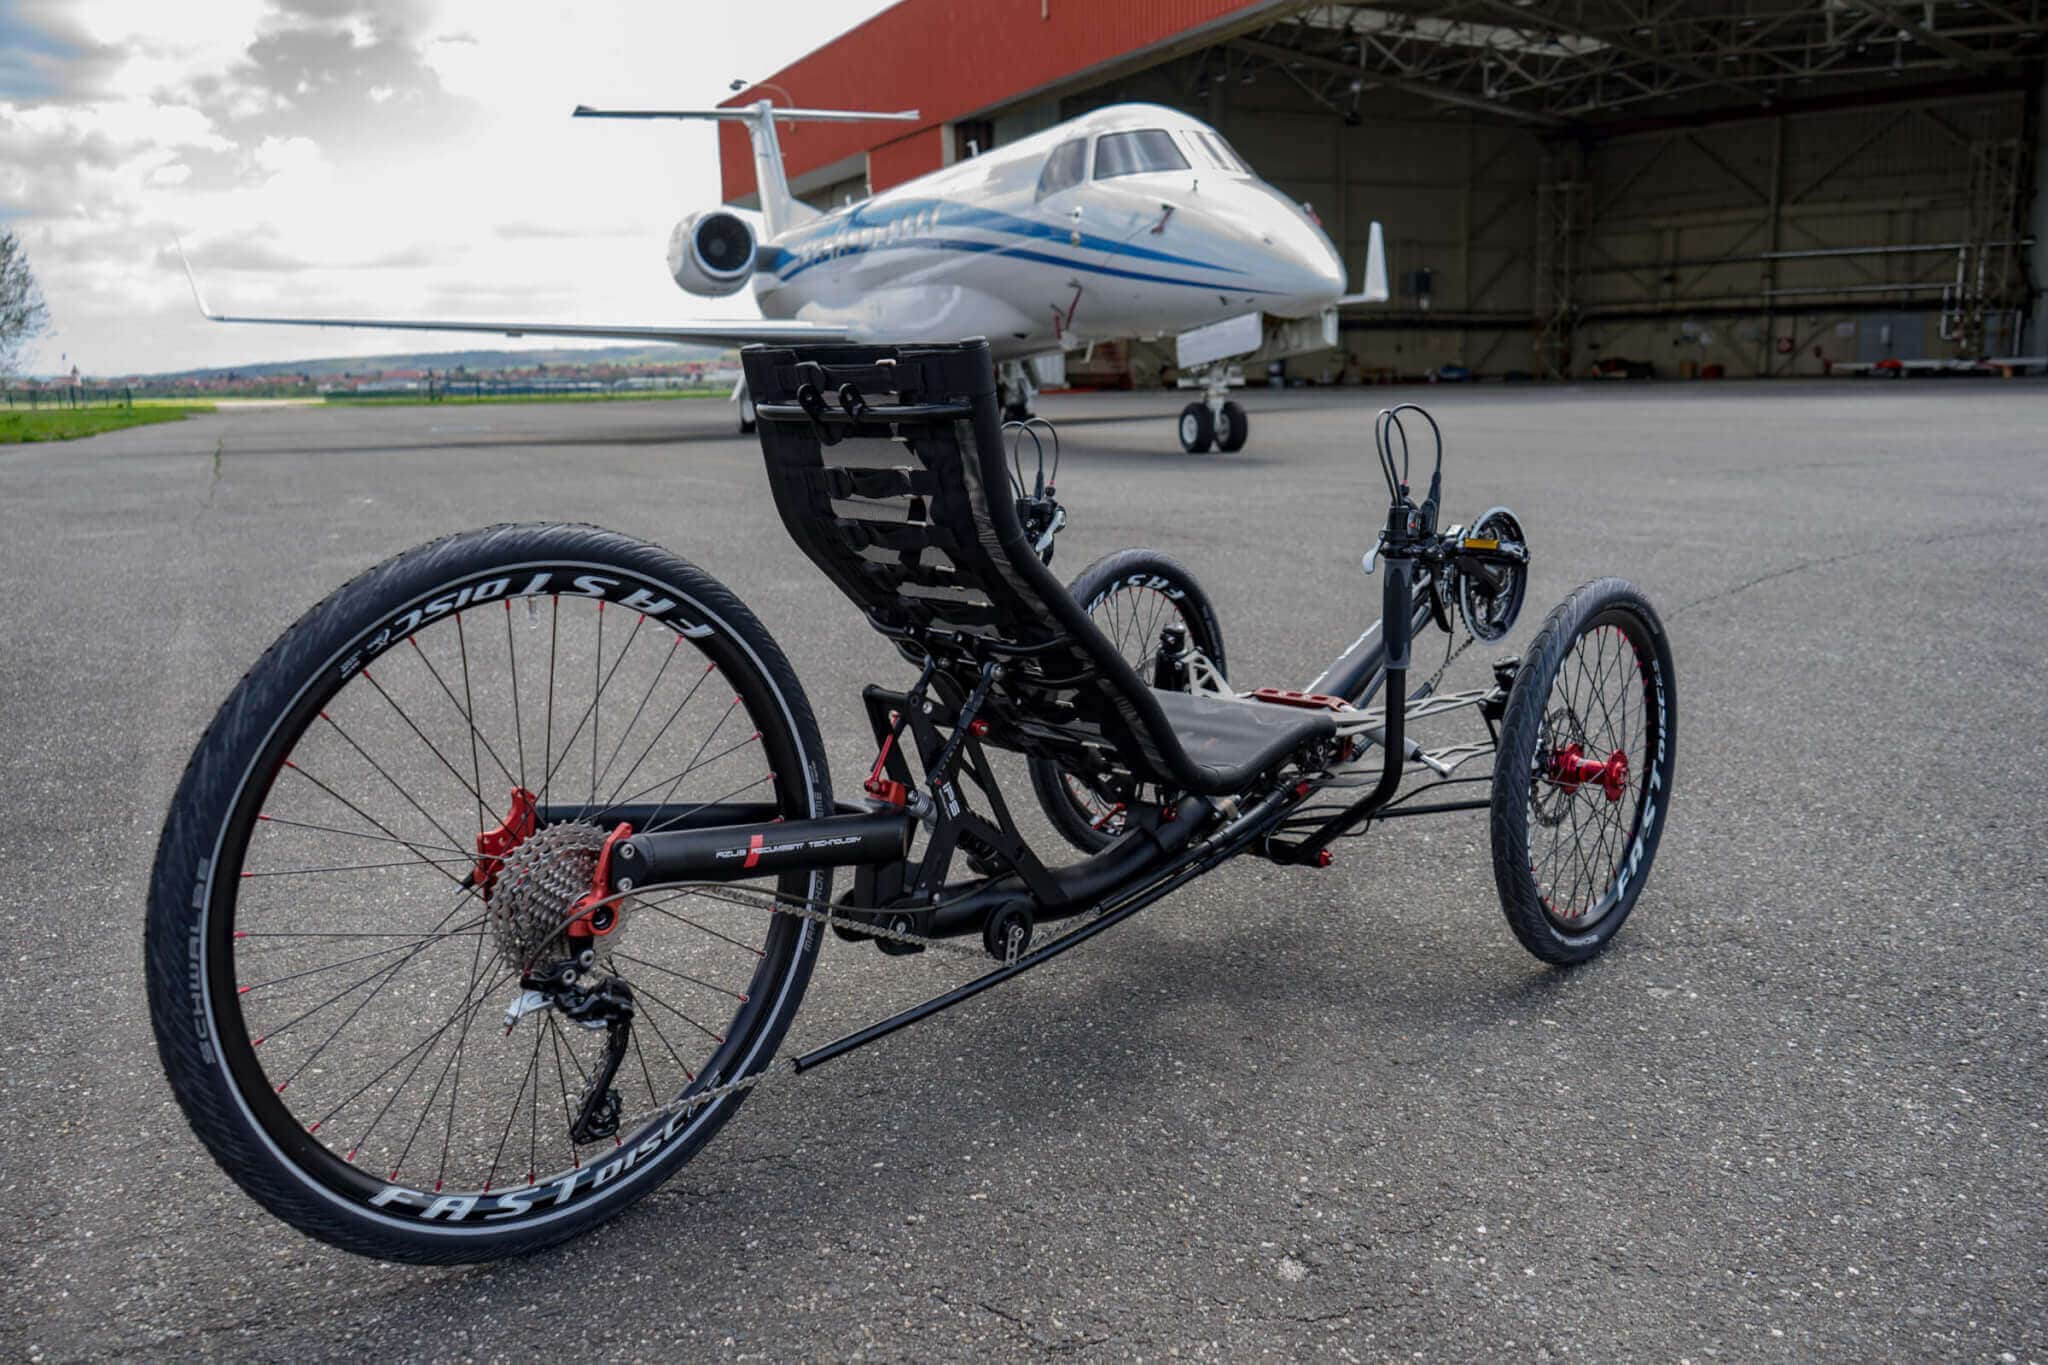 foldable trike bike